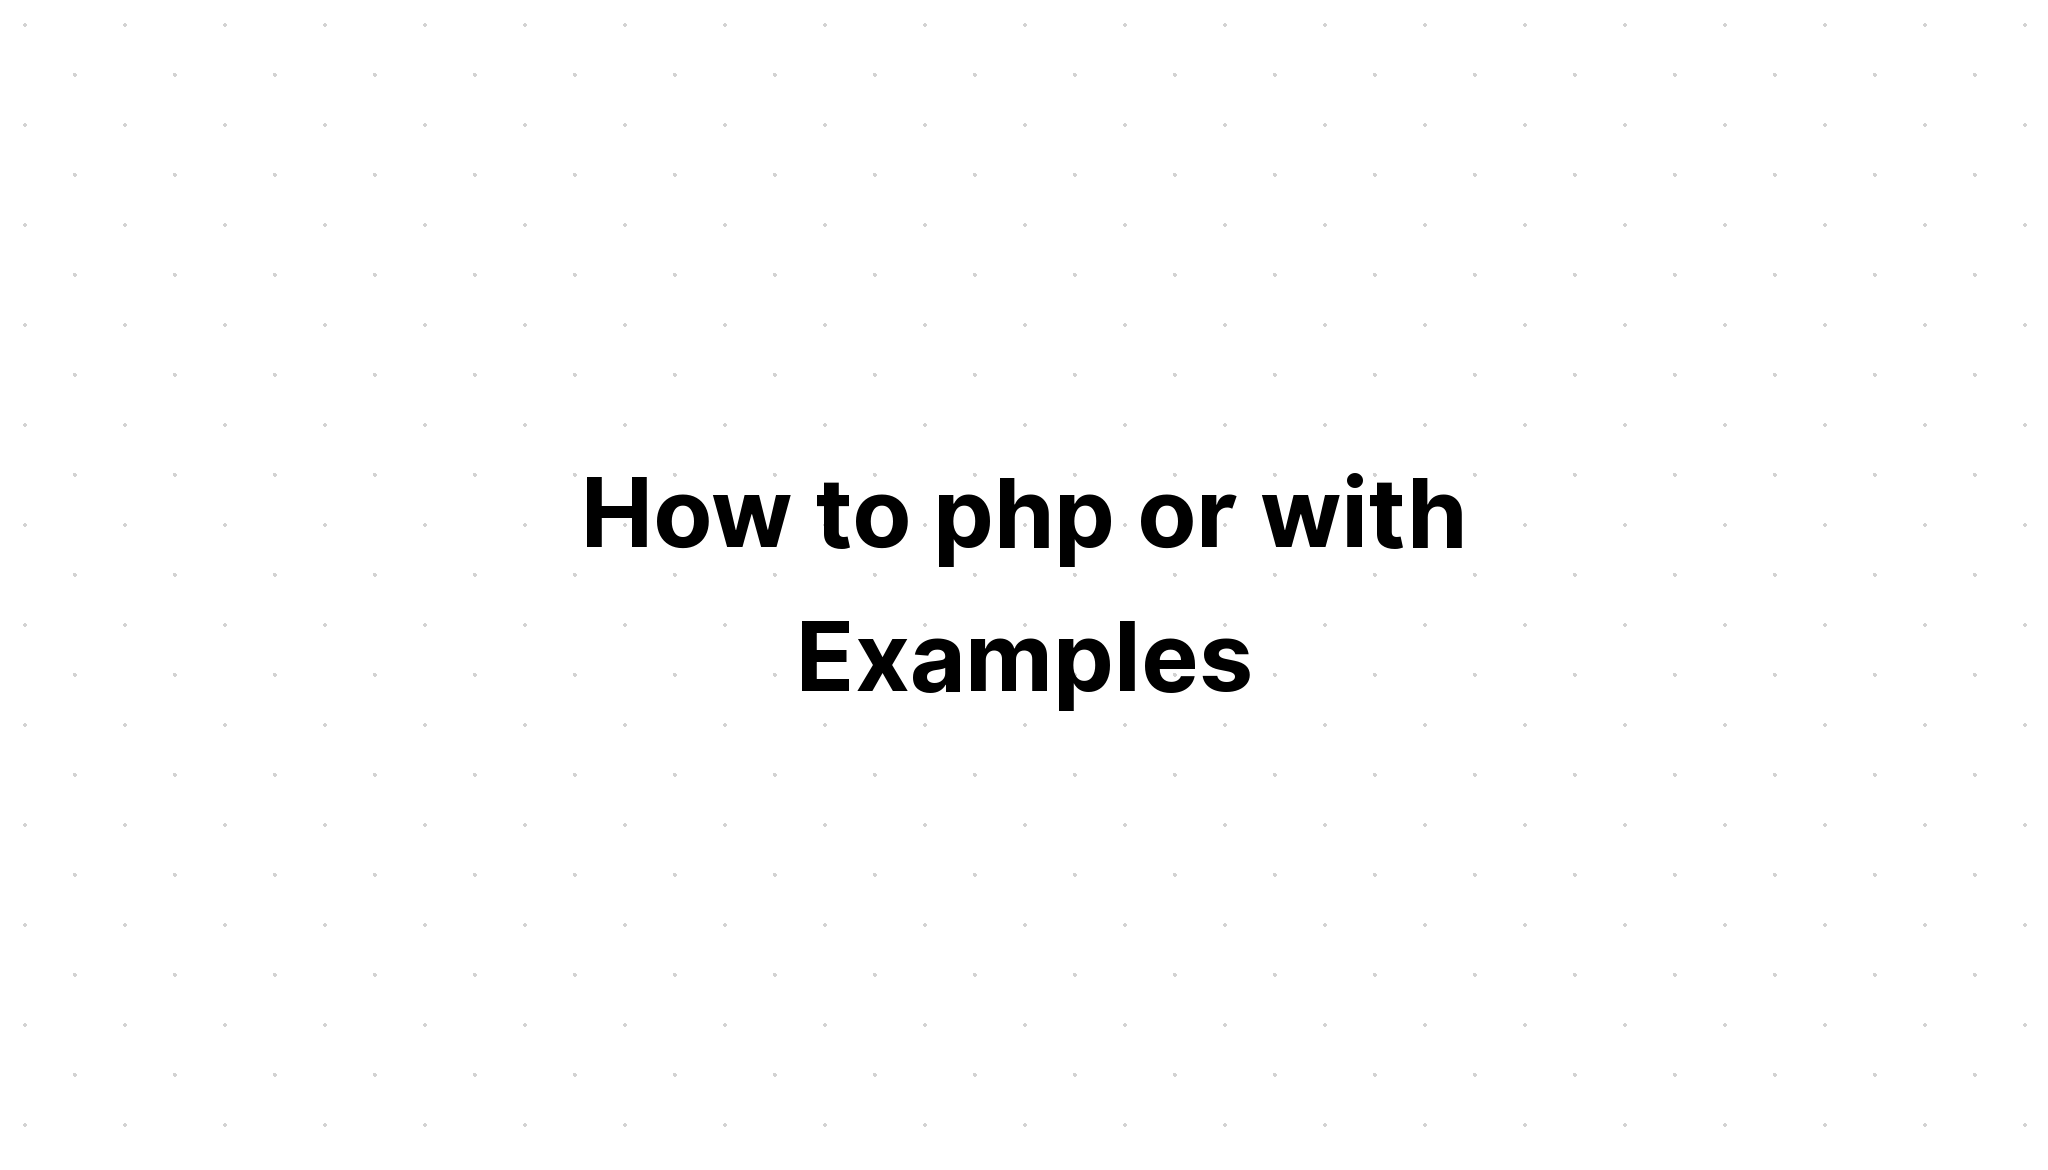 Làm thế nào để php hoặc với các ví dụ